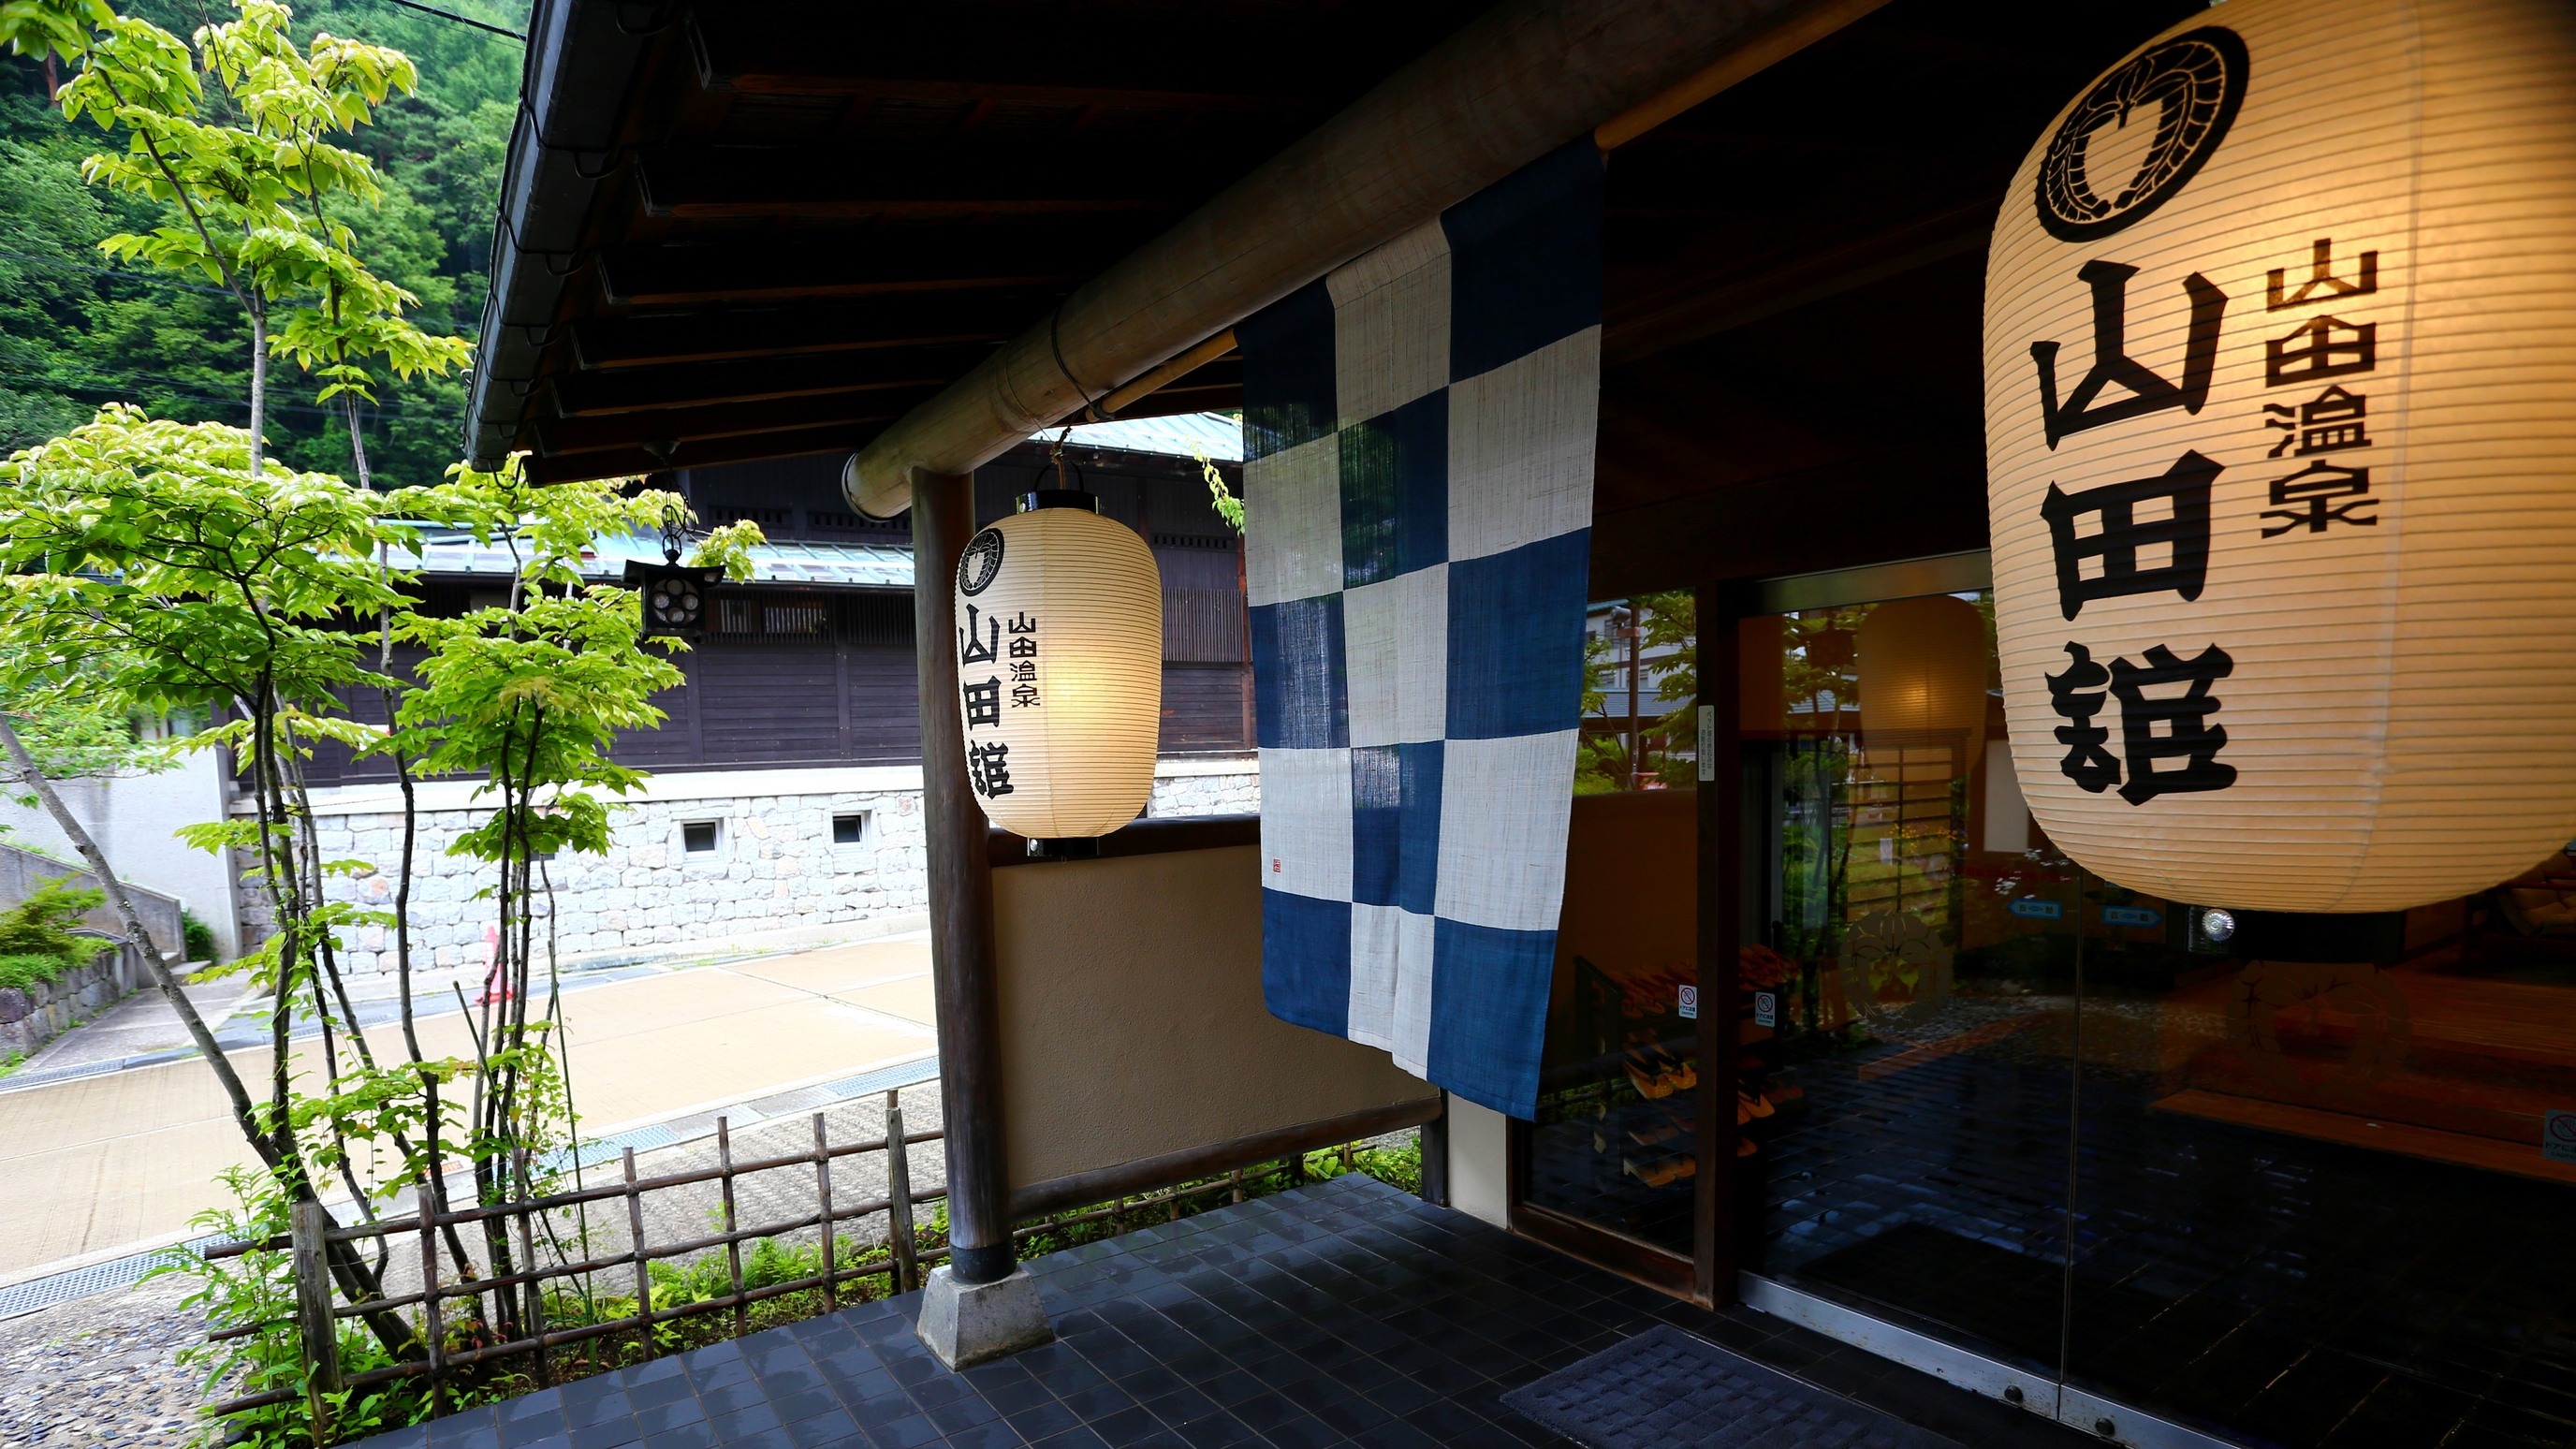 長野県・山田温泉で秘湯気分が味わえる露天風呂がある宿を教えてください。